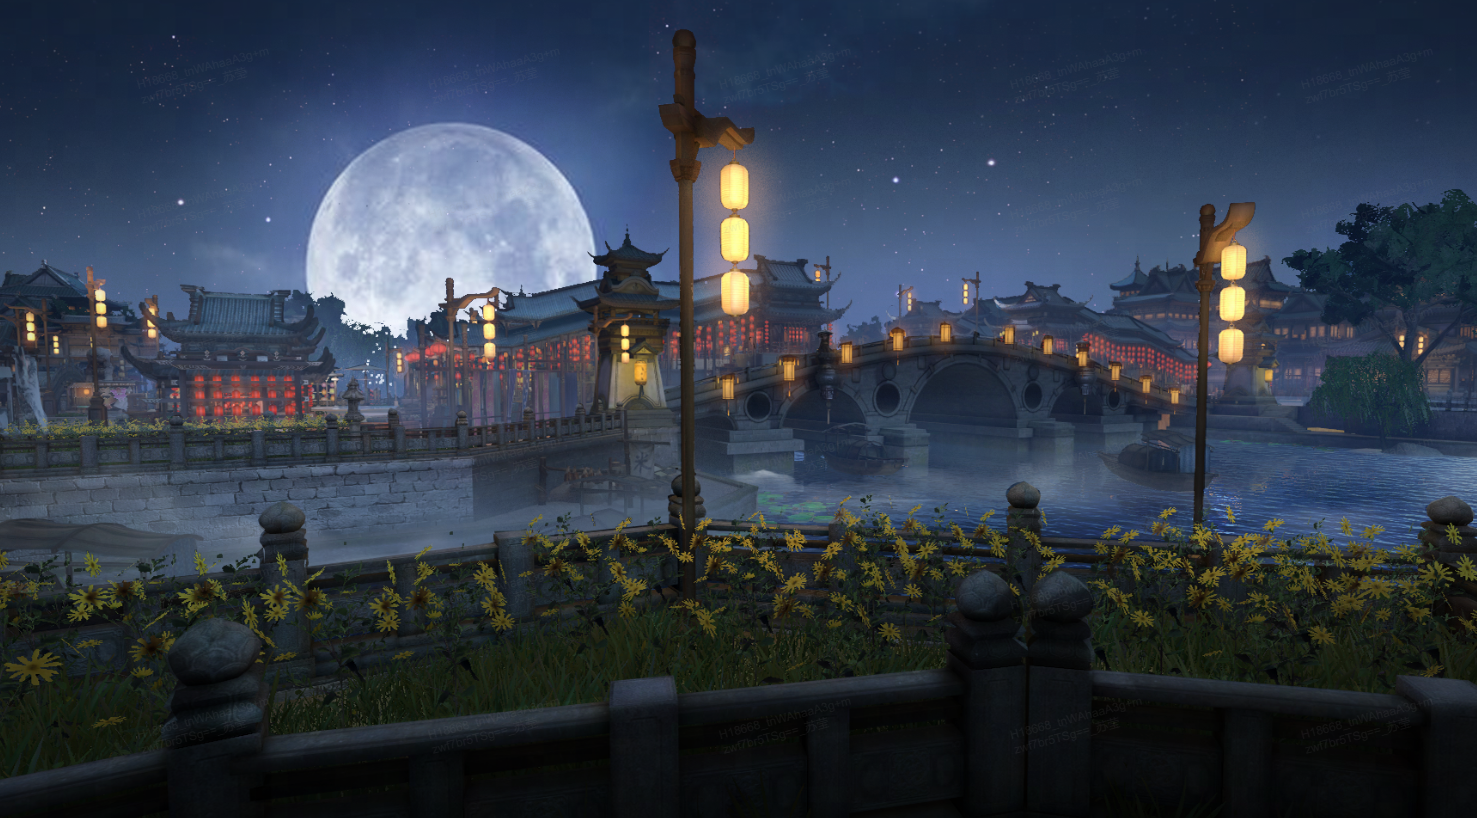 这是一幅东亚风格的夜景图，有亭台楼阁、石桥、河流和路灯，背景是明亮的满月和夜空。